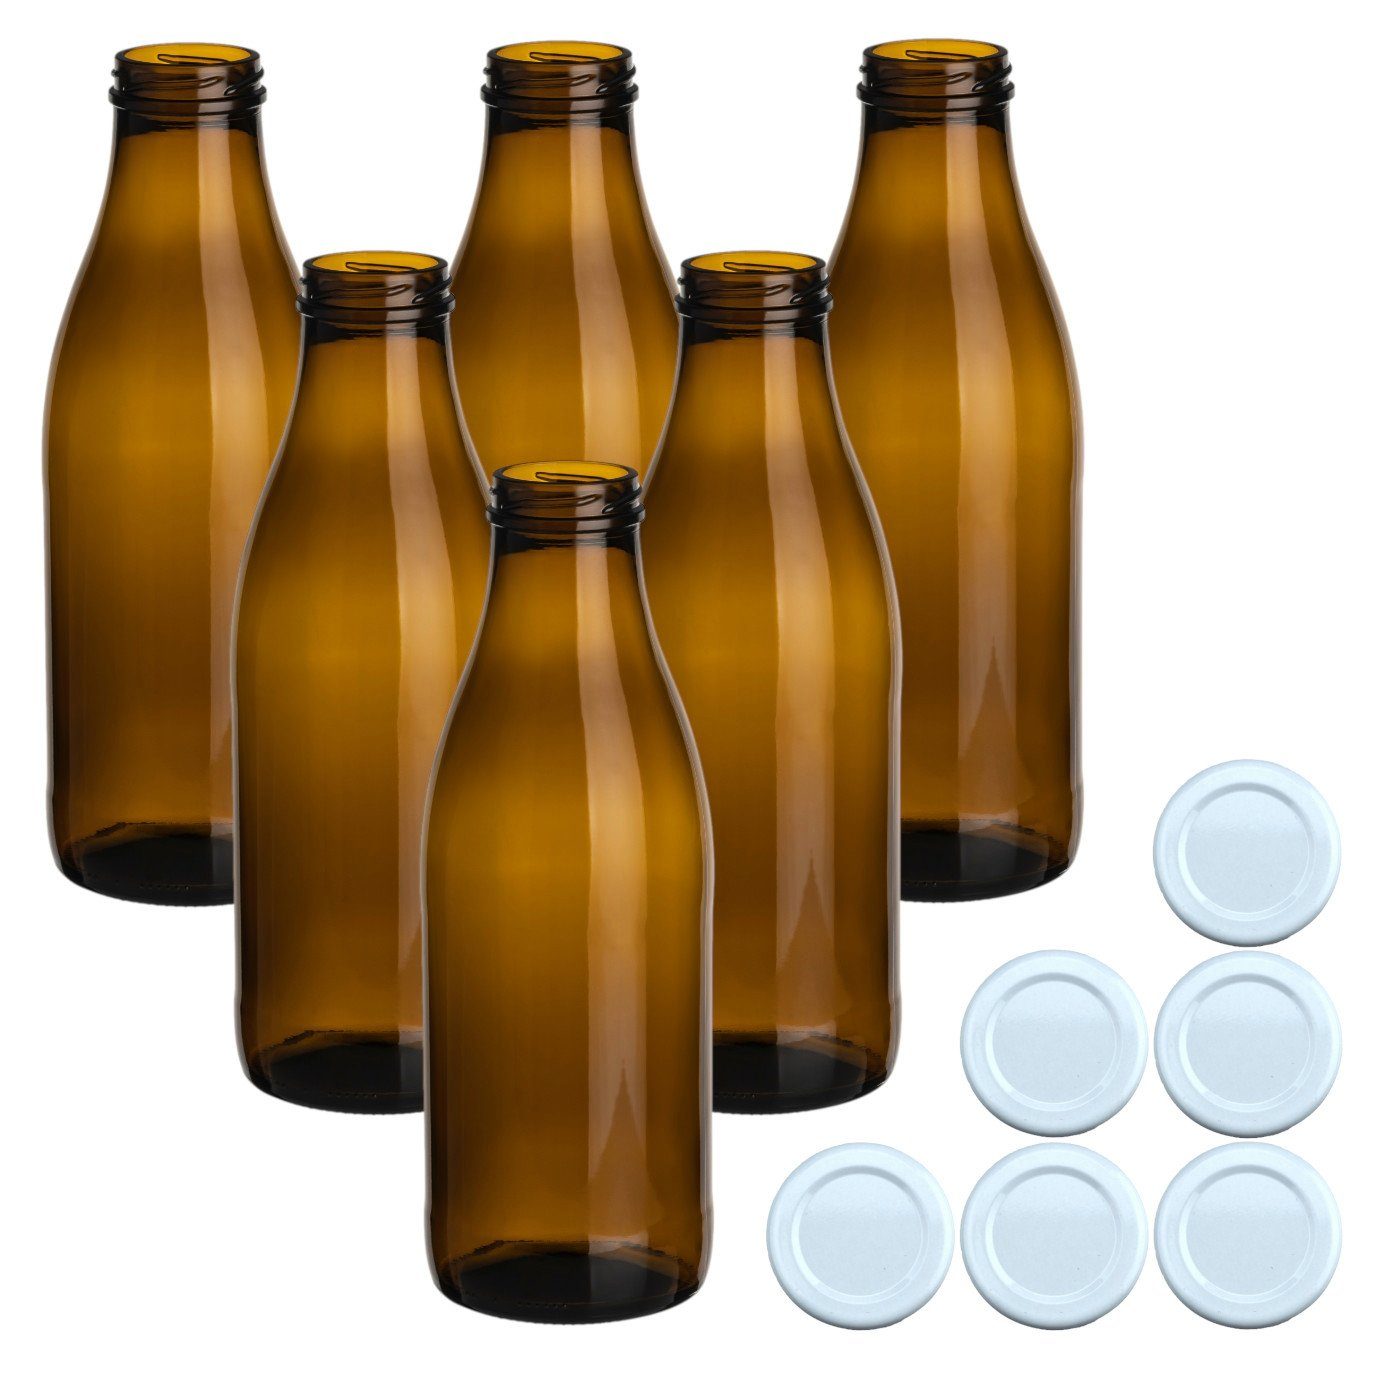 gouveo Trinkflasche Saftflaschen 1000 ml mit Schraub-Deckel - Große Flasche 1,0 l aus Glas, 6er Set, braun/weiß